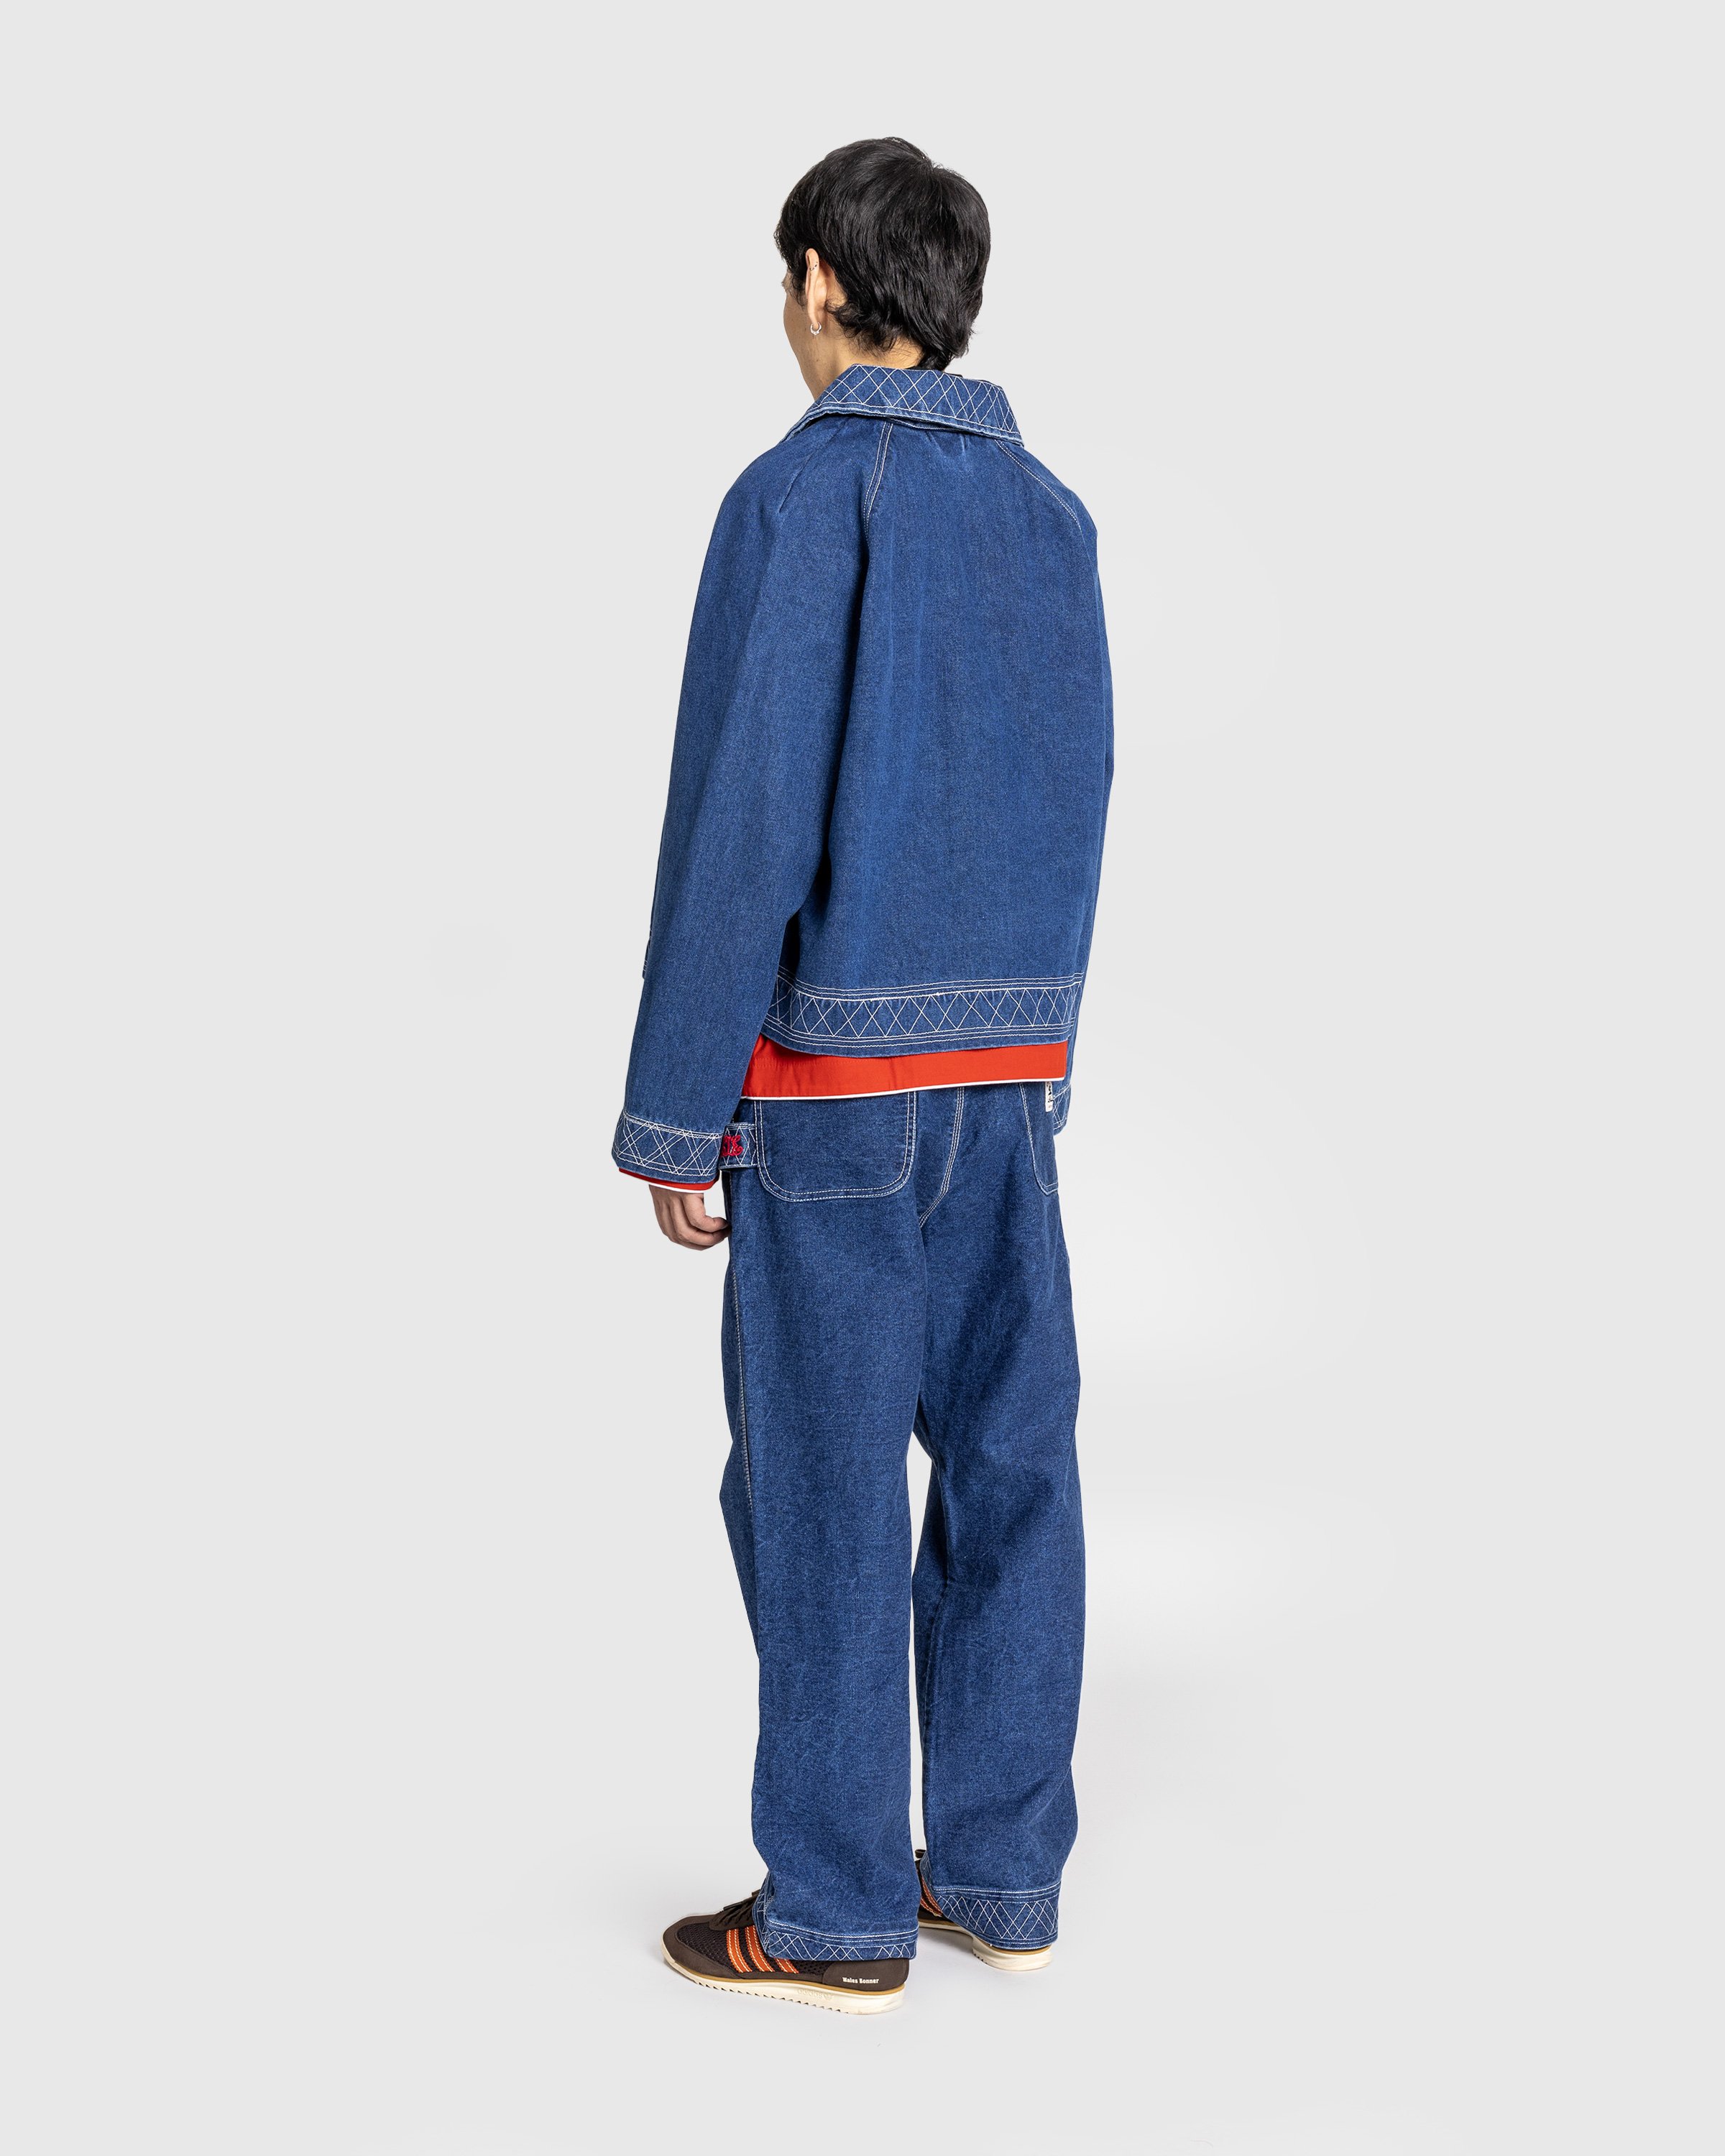 Bode - Embroidered Denim Jacket Indigo - Clothing - Blue - Image 4